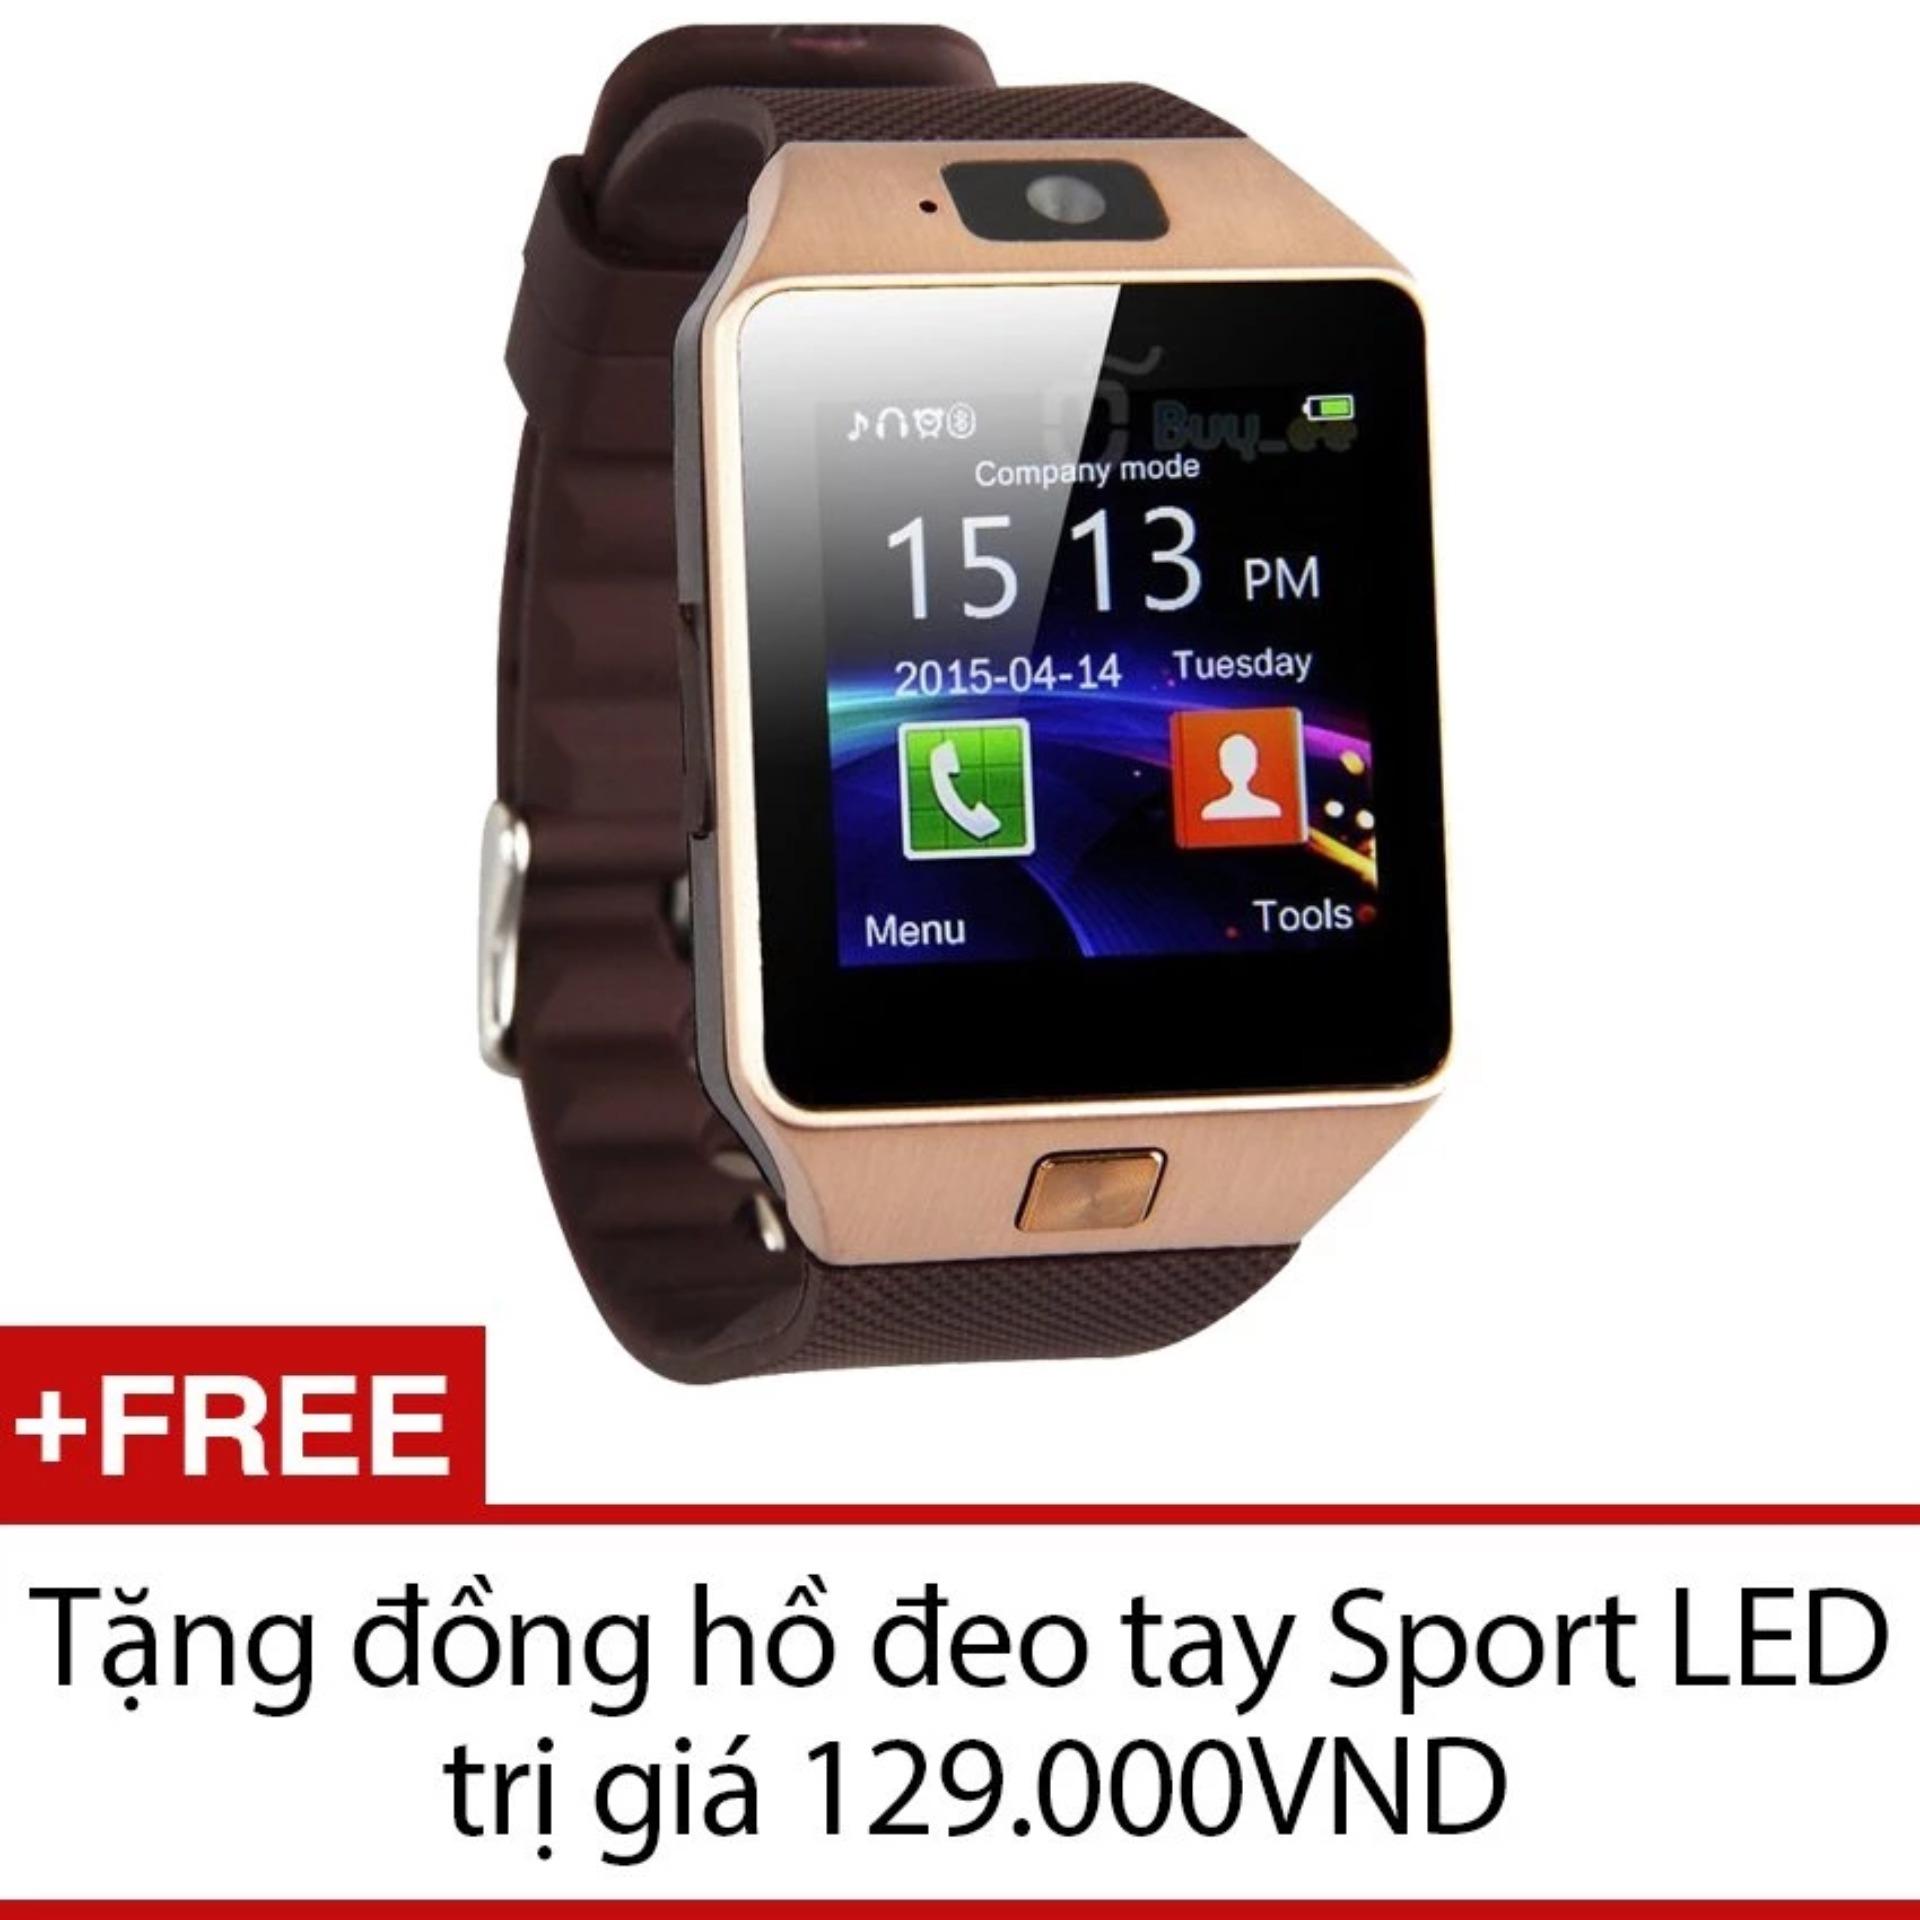 Đồng hồ thông minh Smart Watch Uwatch DZ09 (Vàng) - Hàng nhập khẩu + Tặng 1 đồng hồ đeo tay...